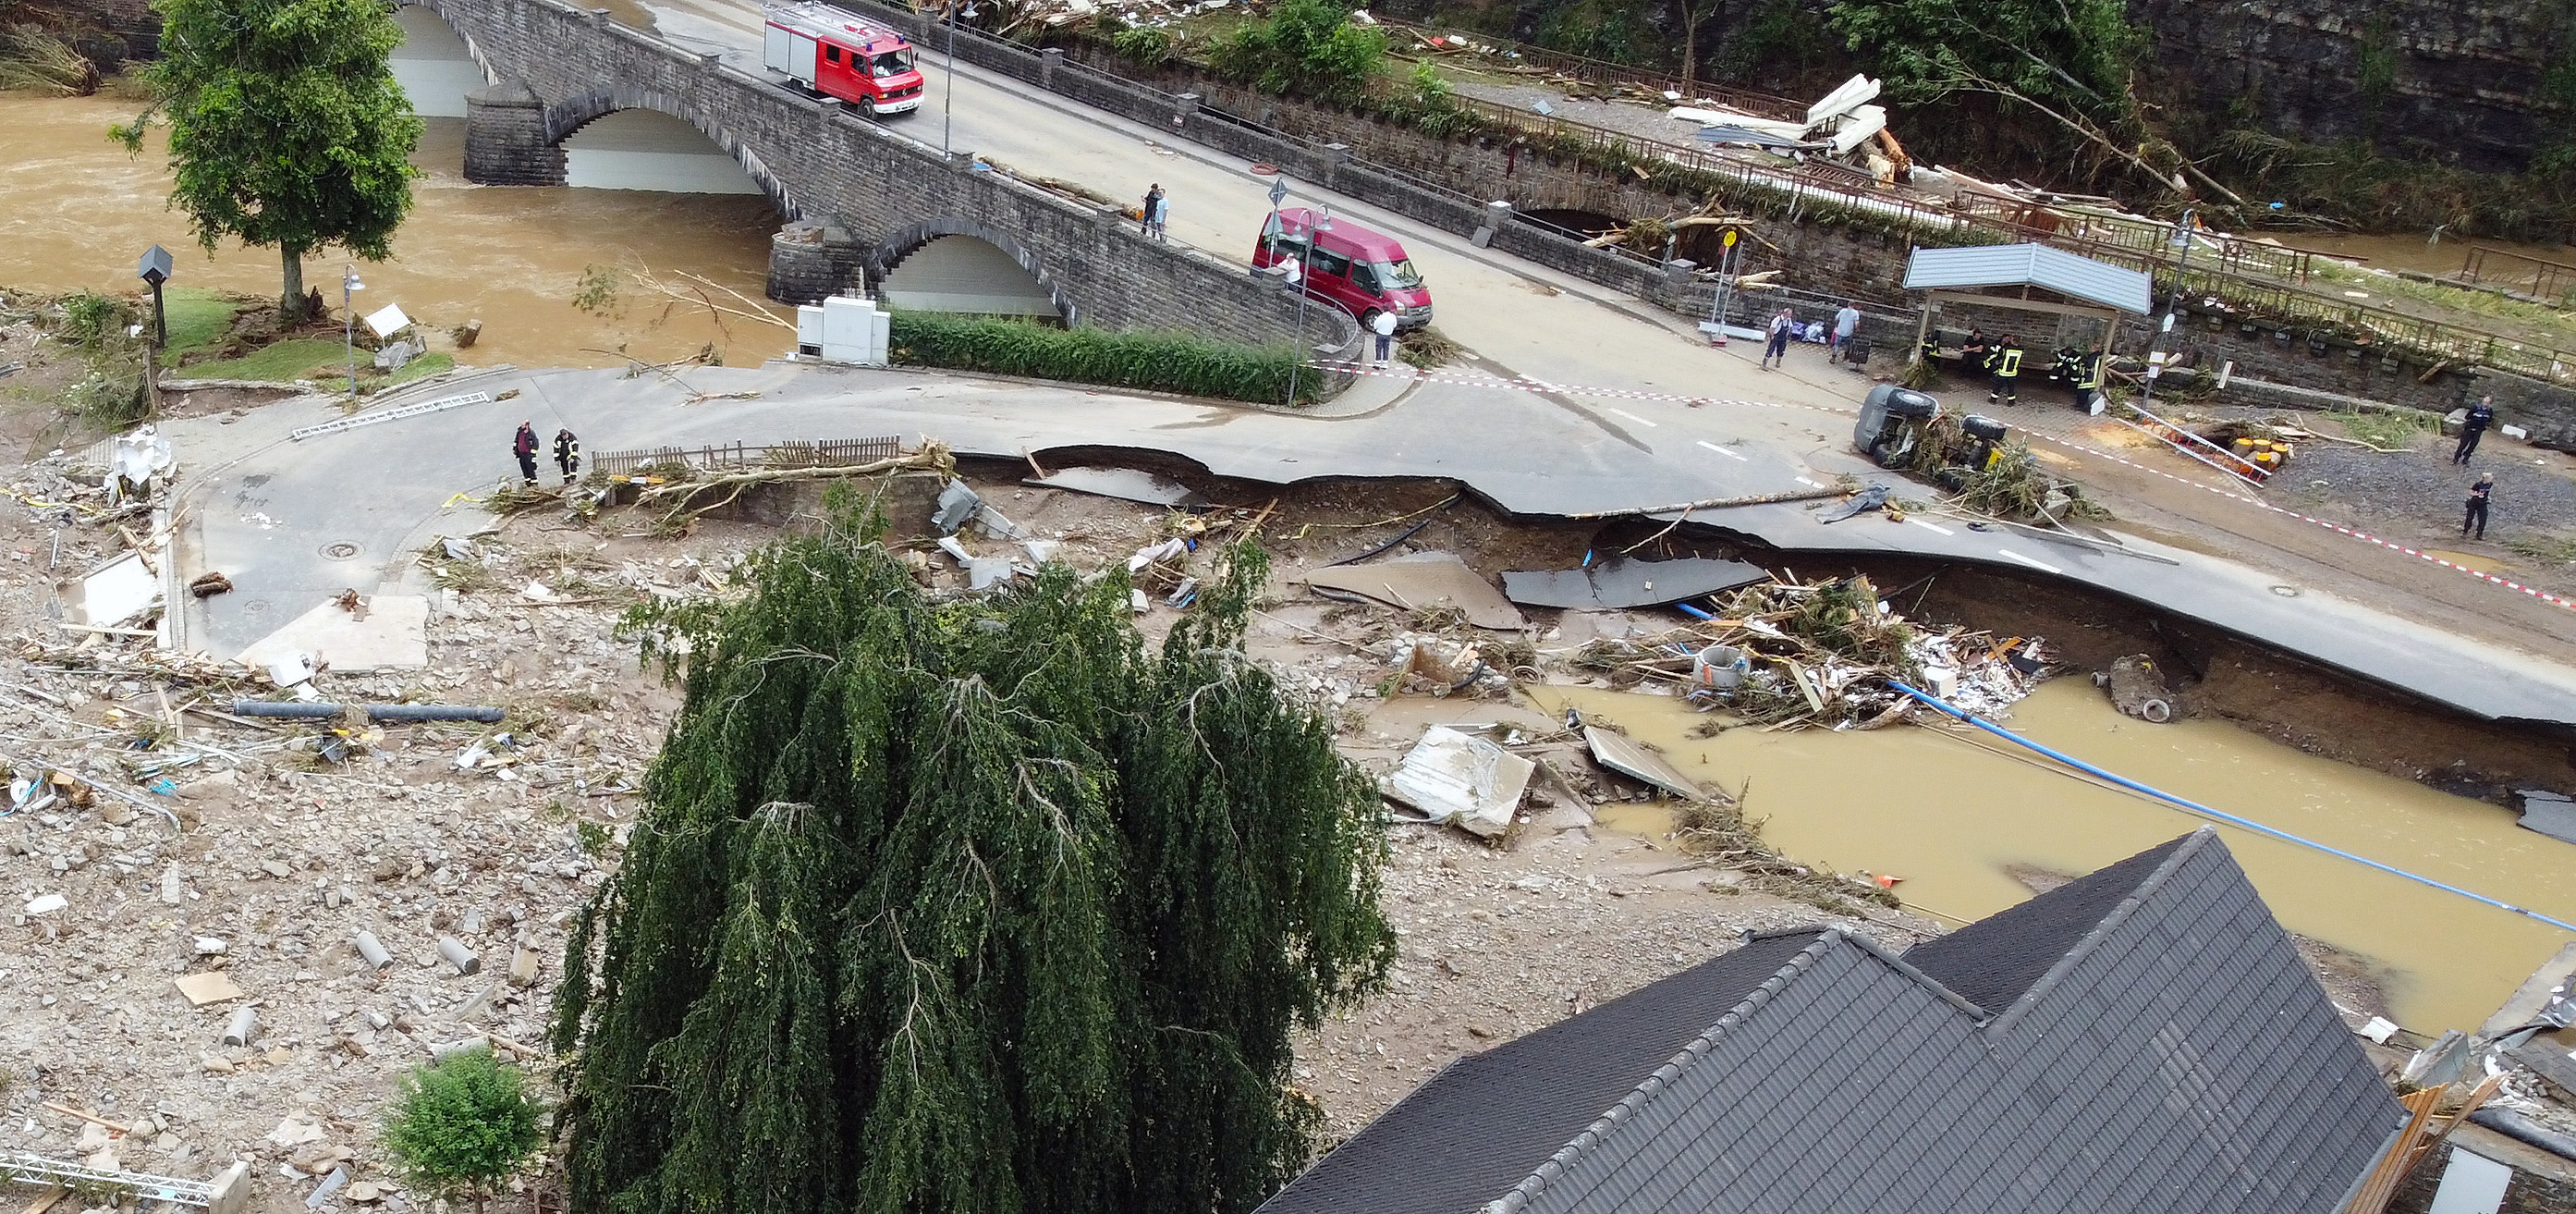 Una vista general del área afectada por las inundaciones luego de las fuertes lluvias en Schuld, Alemania, el 15 de julio de 2021